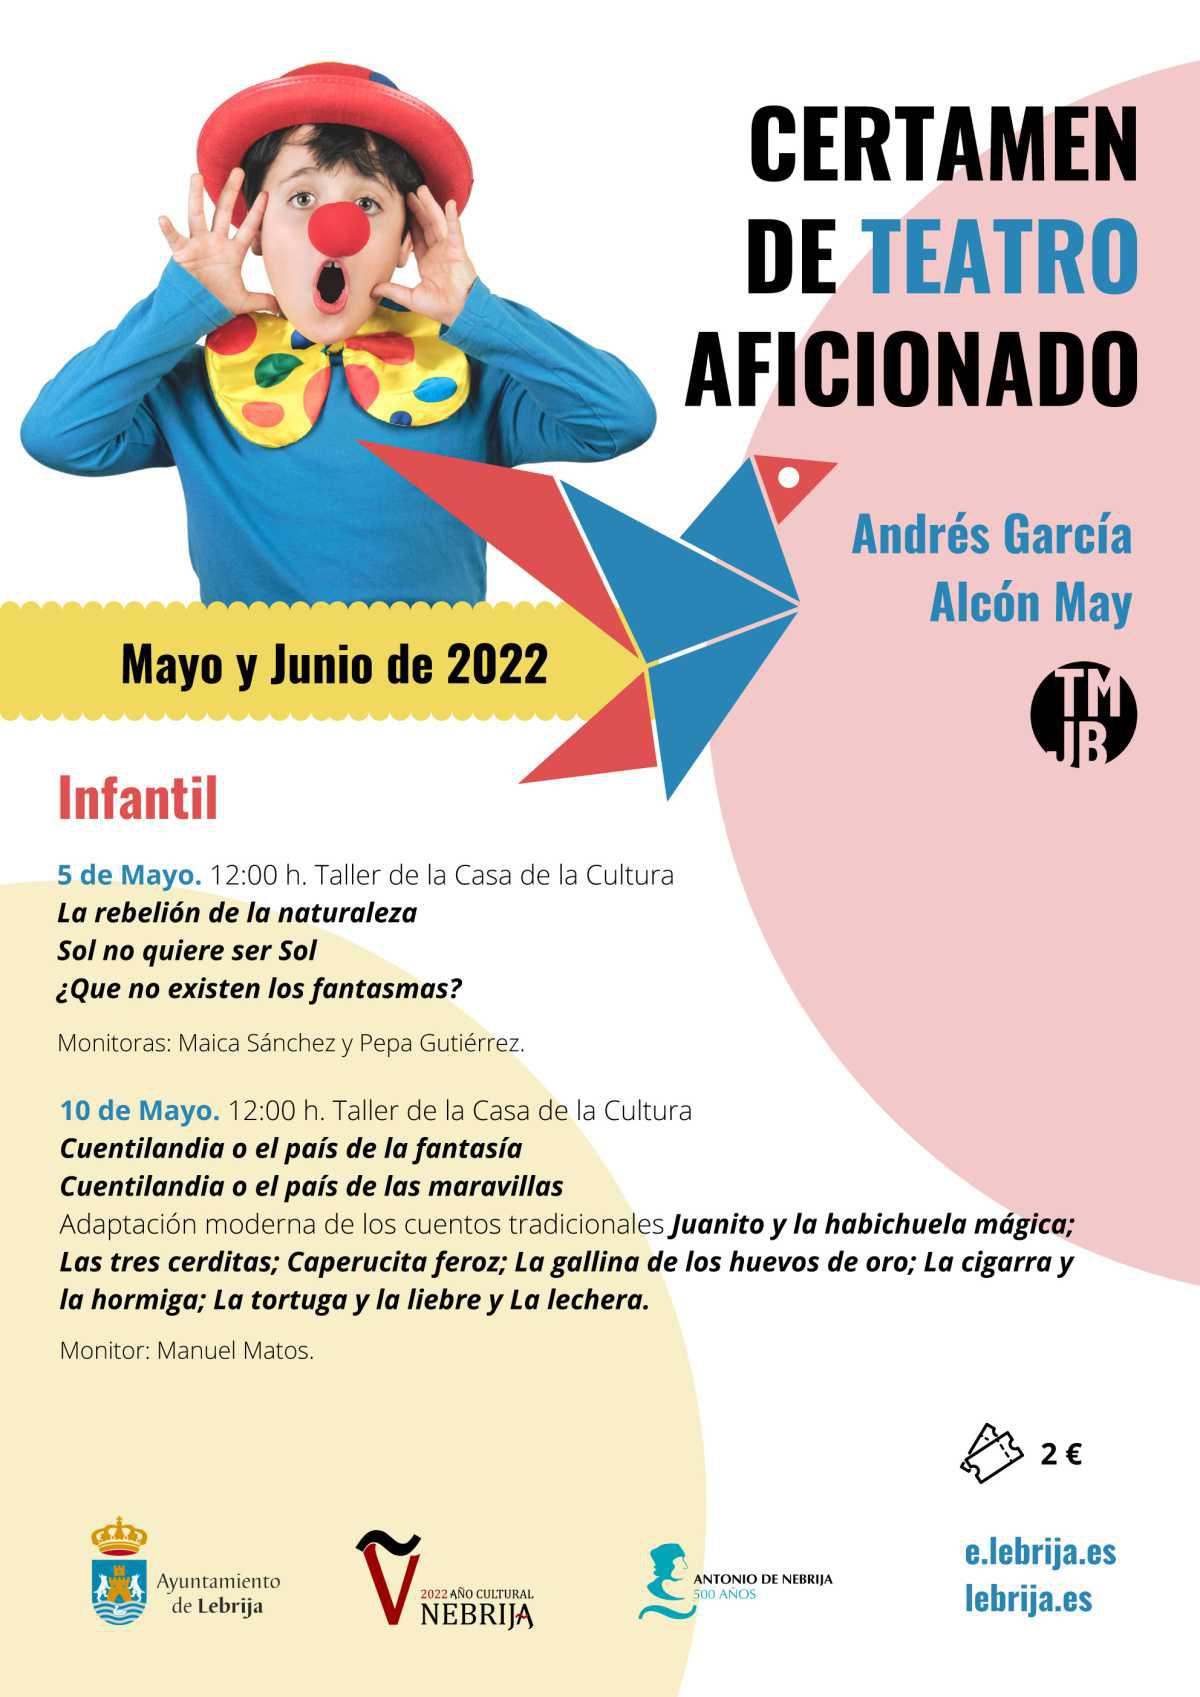 La nueva edición del Certamen de Teatro Aficionado Andrés García Alcón "May" comienza este jueves 5 de mayo